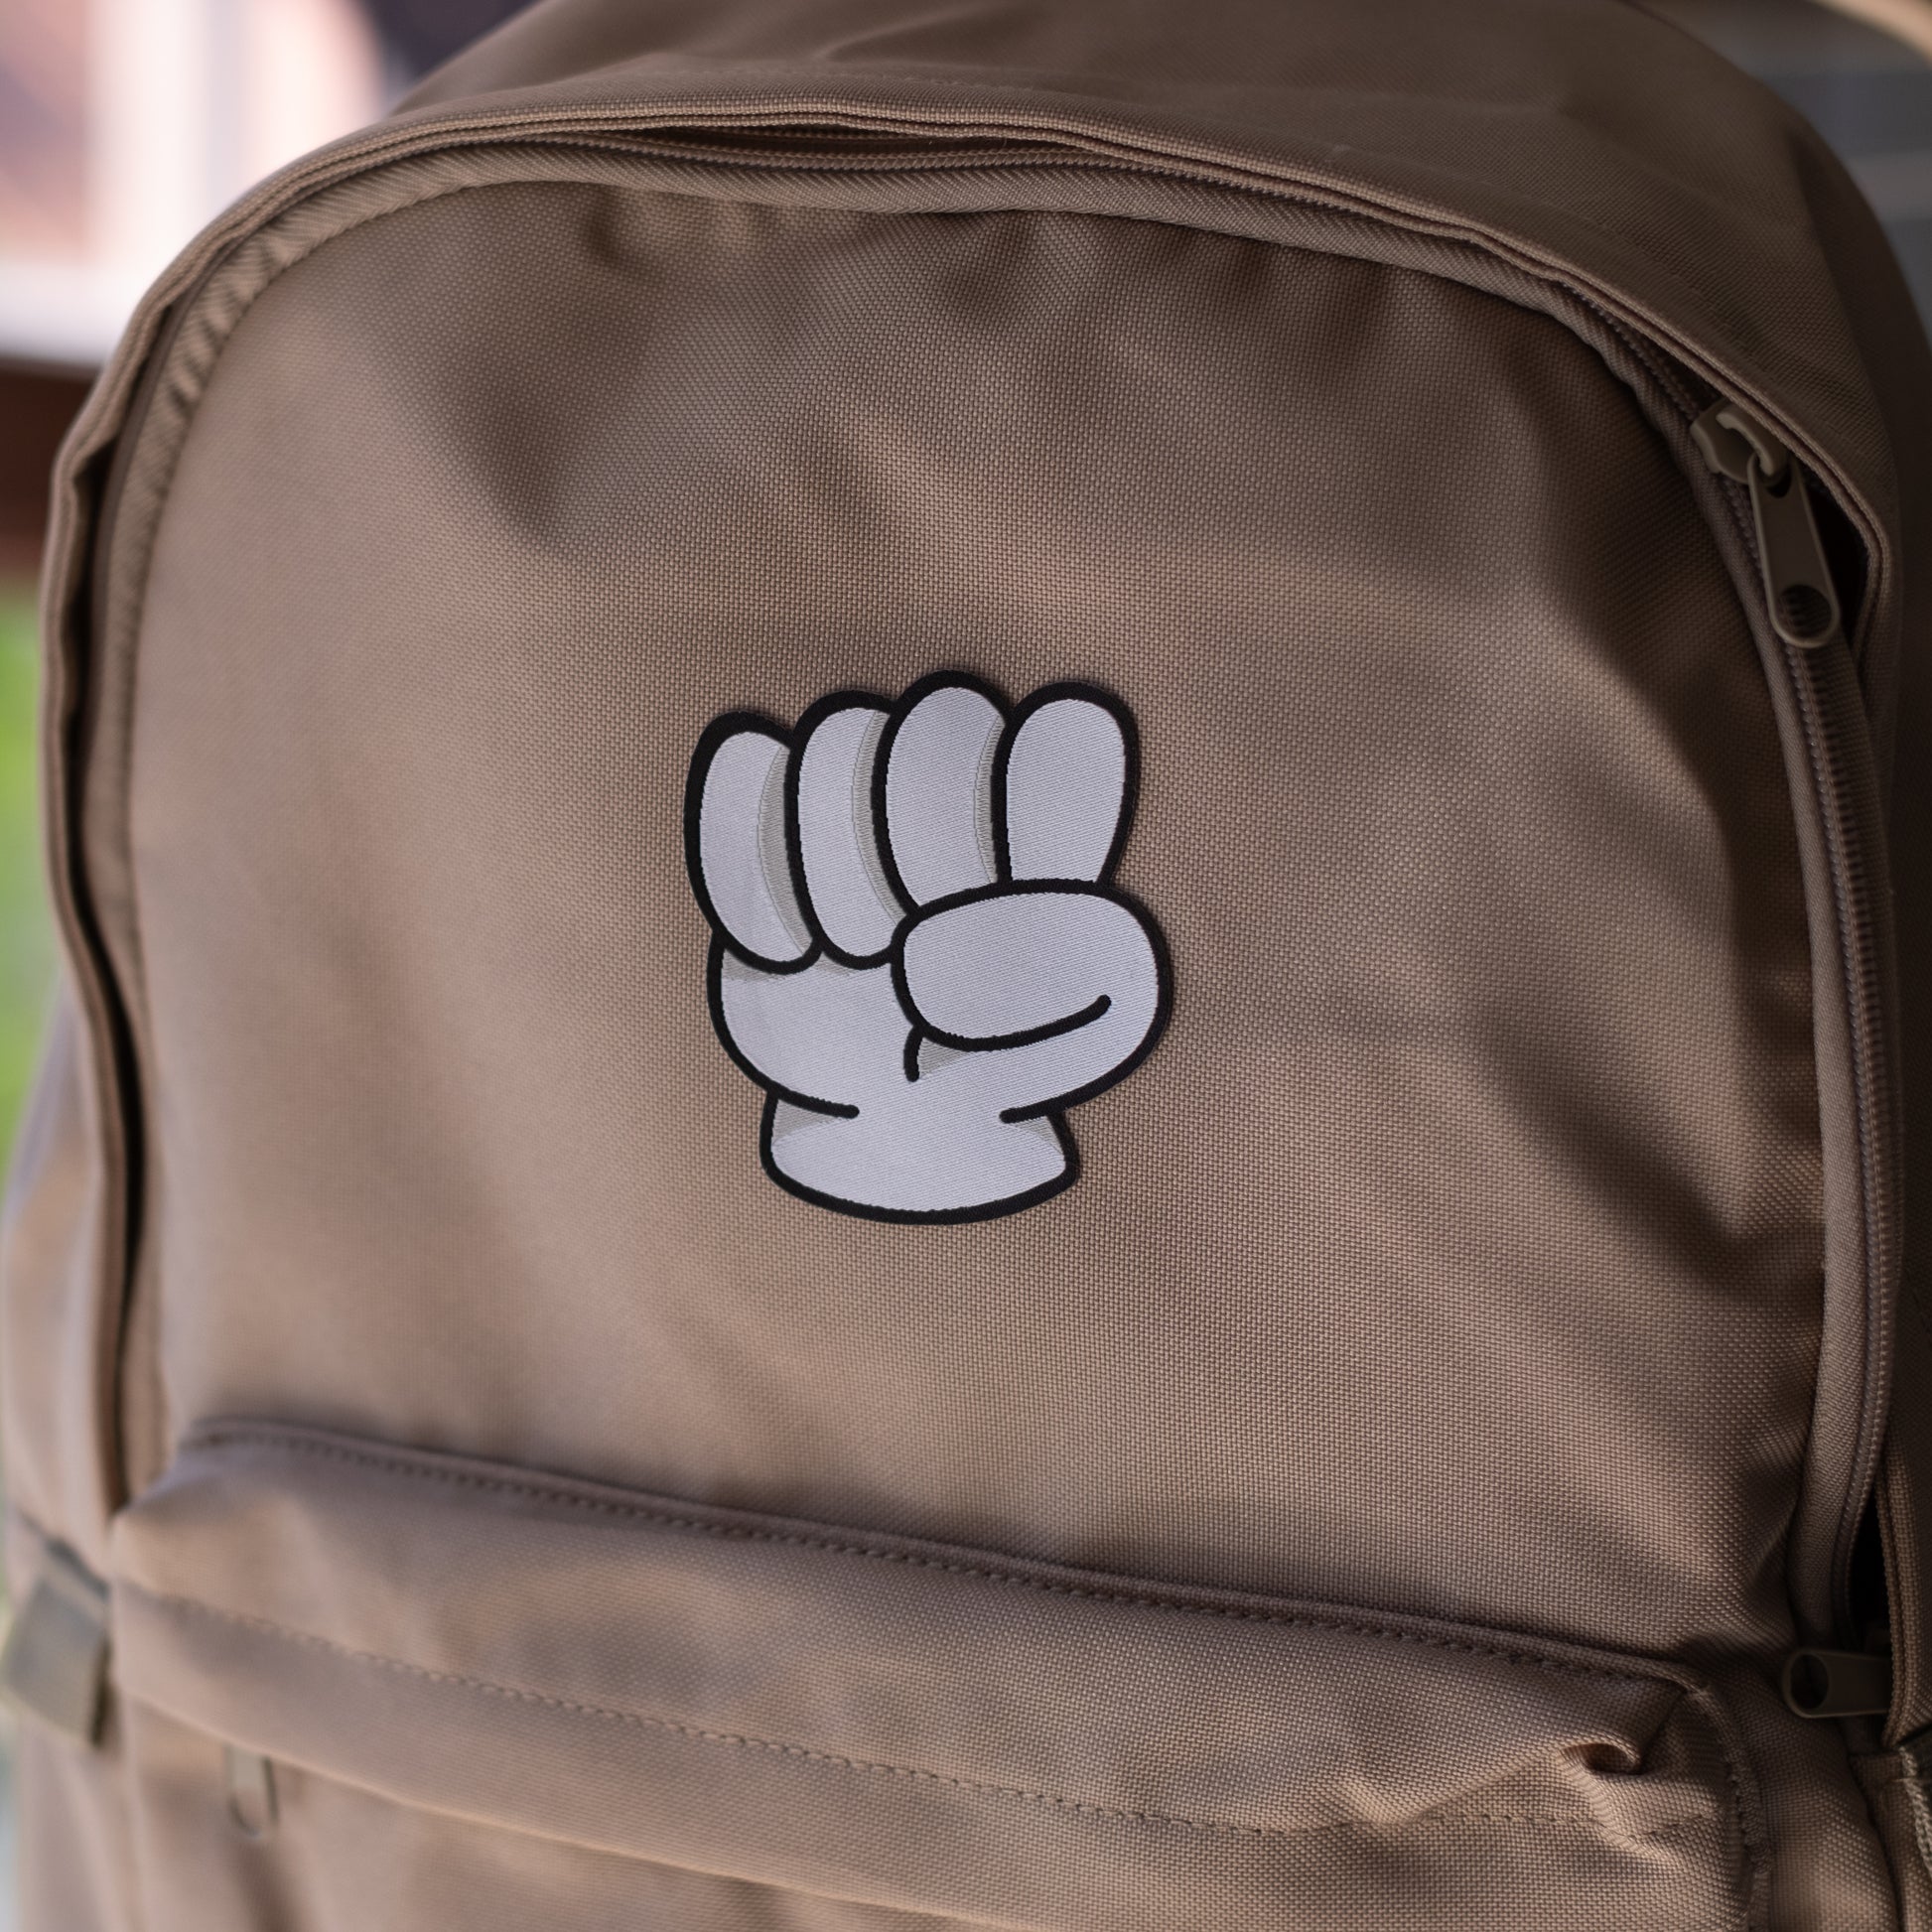 Fist feels!  En stor High-five för det. Det här tygmärket tar verkligen för sig, precis som vi vill att du ska göra! Vår patchie på en brun ryggsäck.